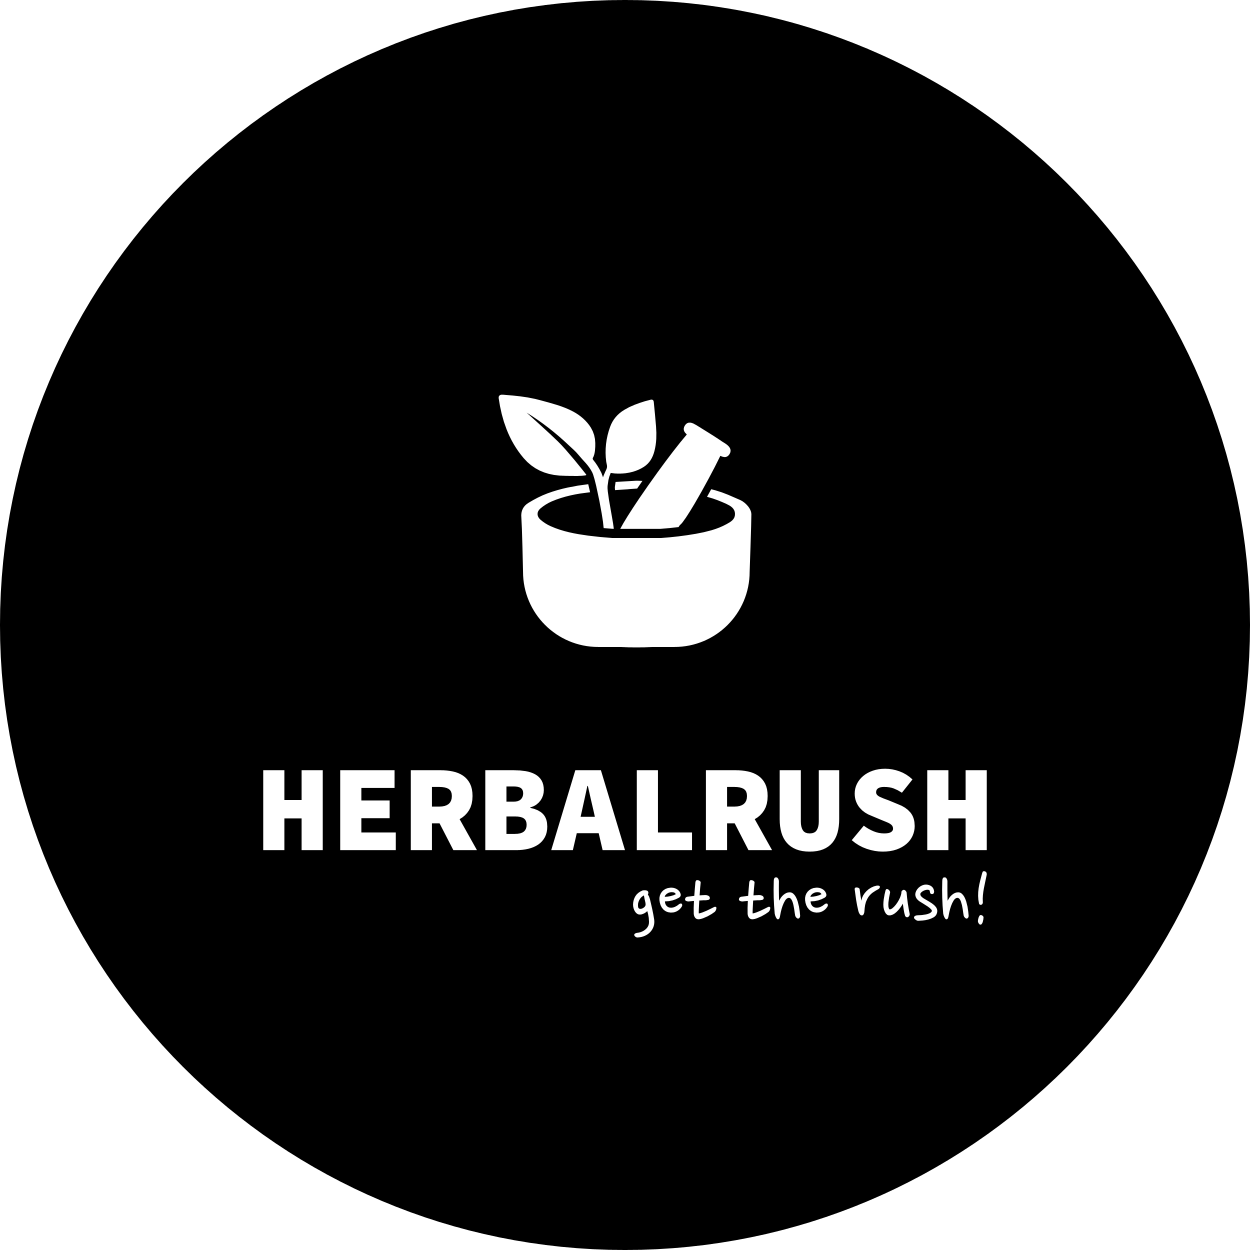 Herbalrush